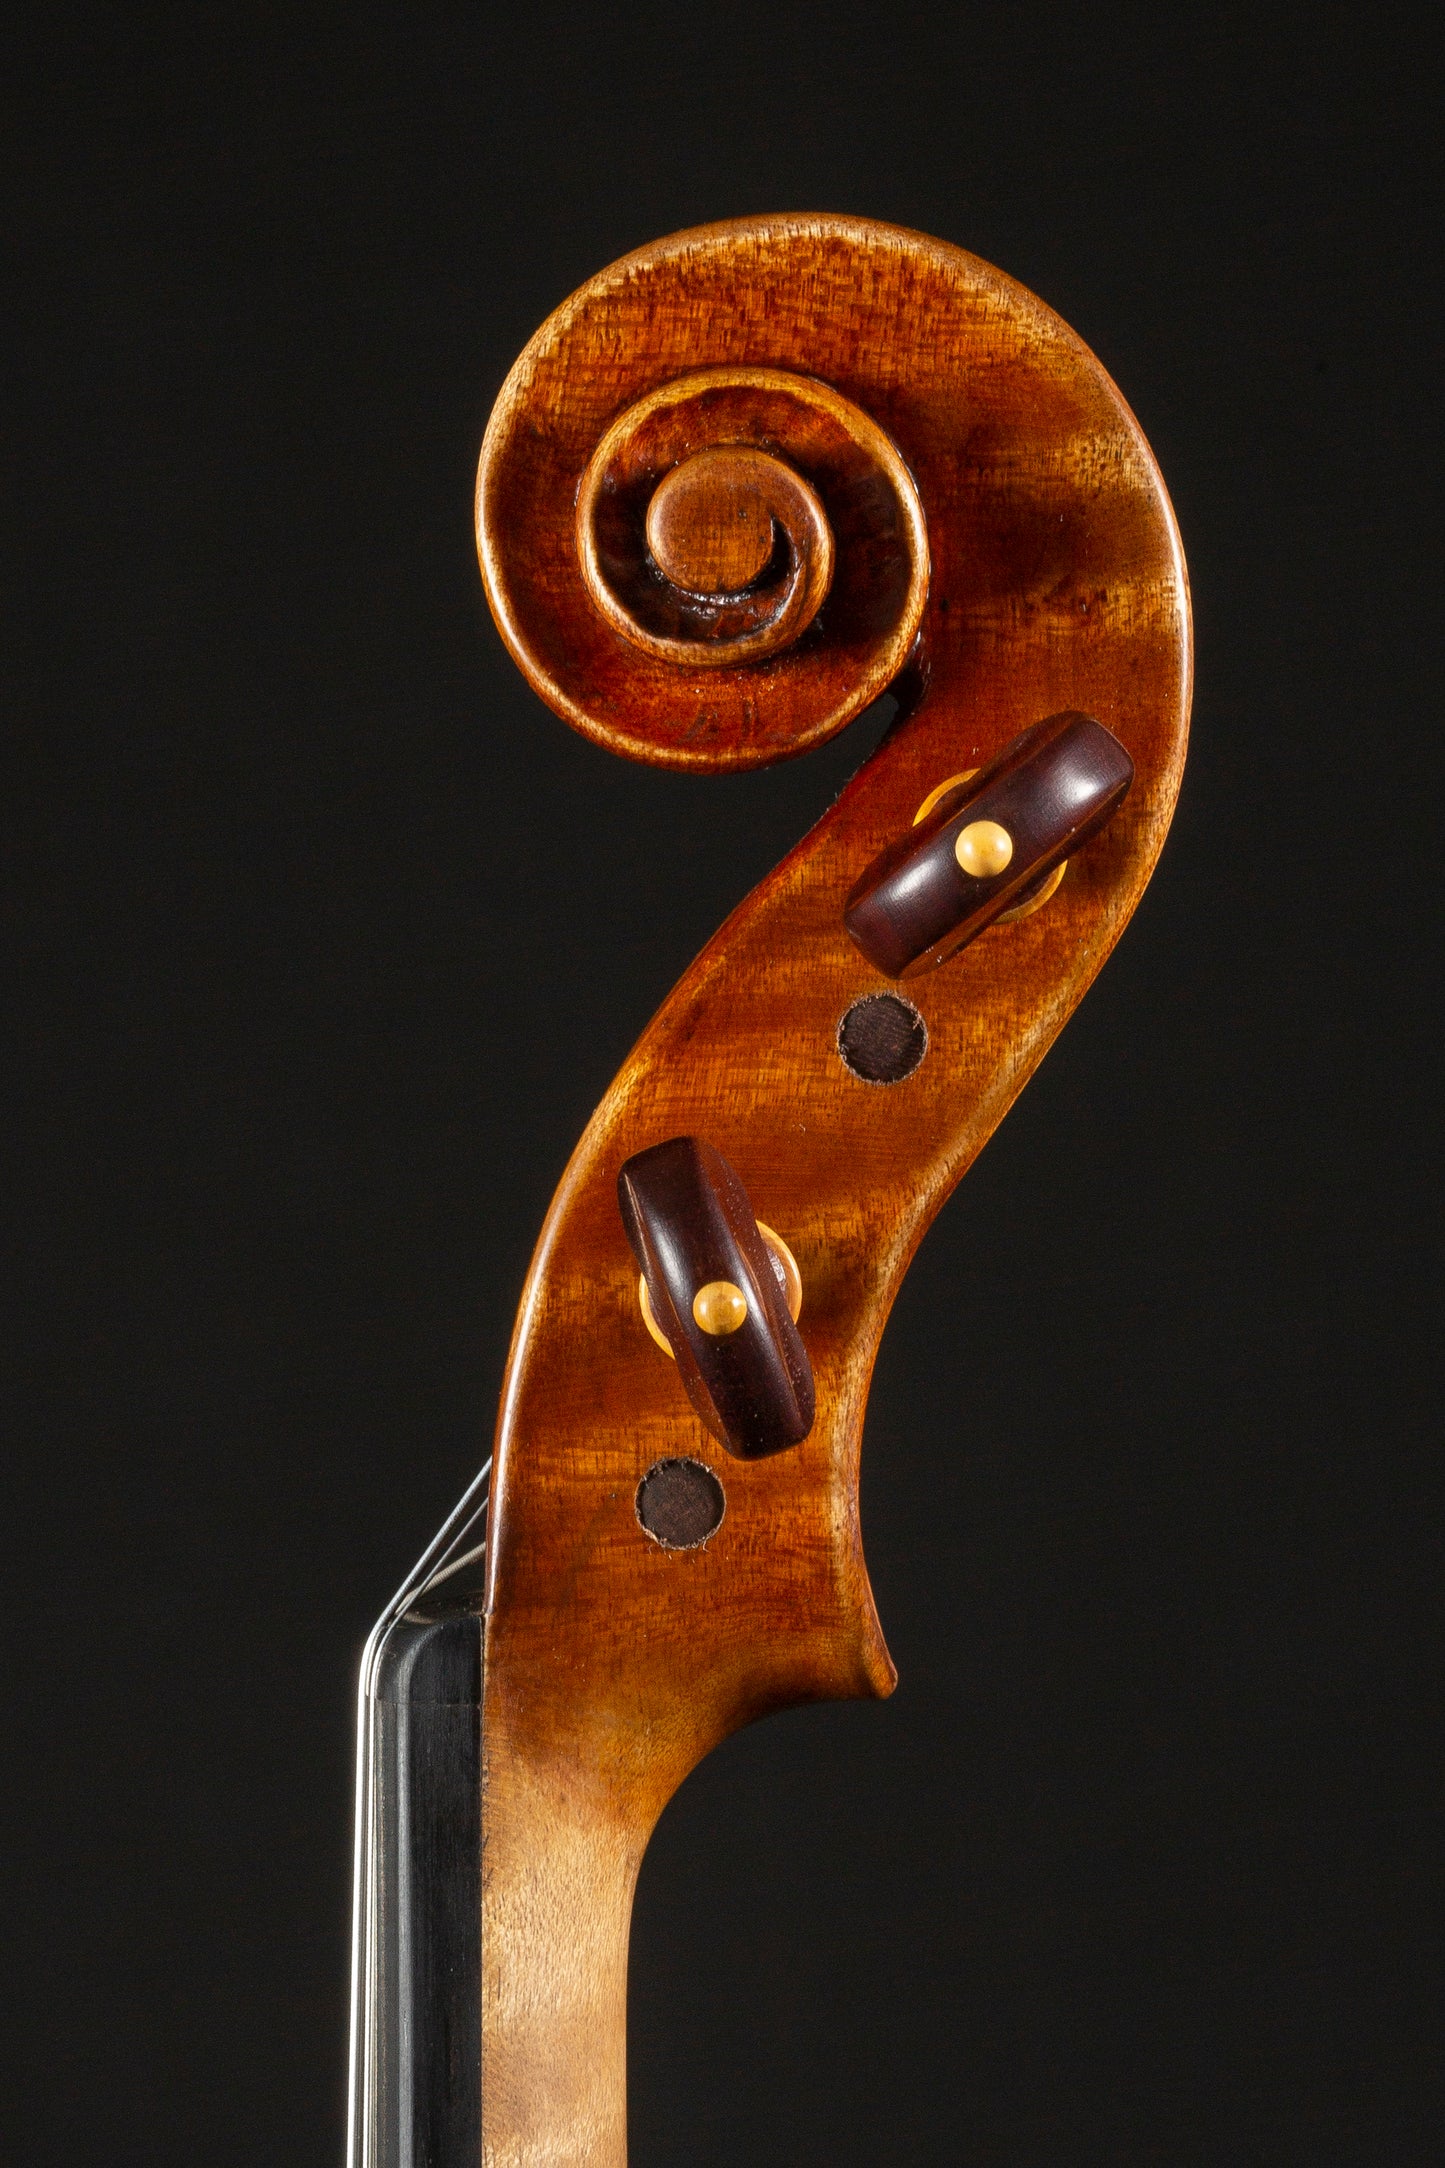 Vettori Paolo Violin Mod. Guarneri Del Gesu "Cannone Paganini" 2021